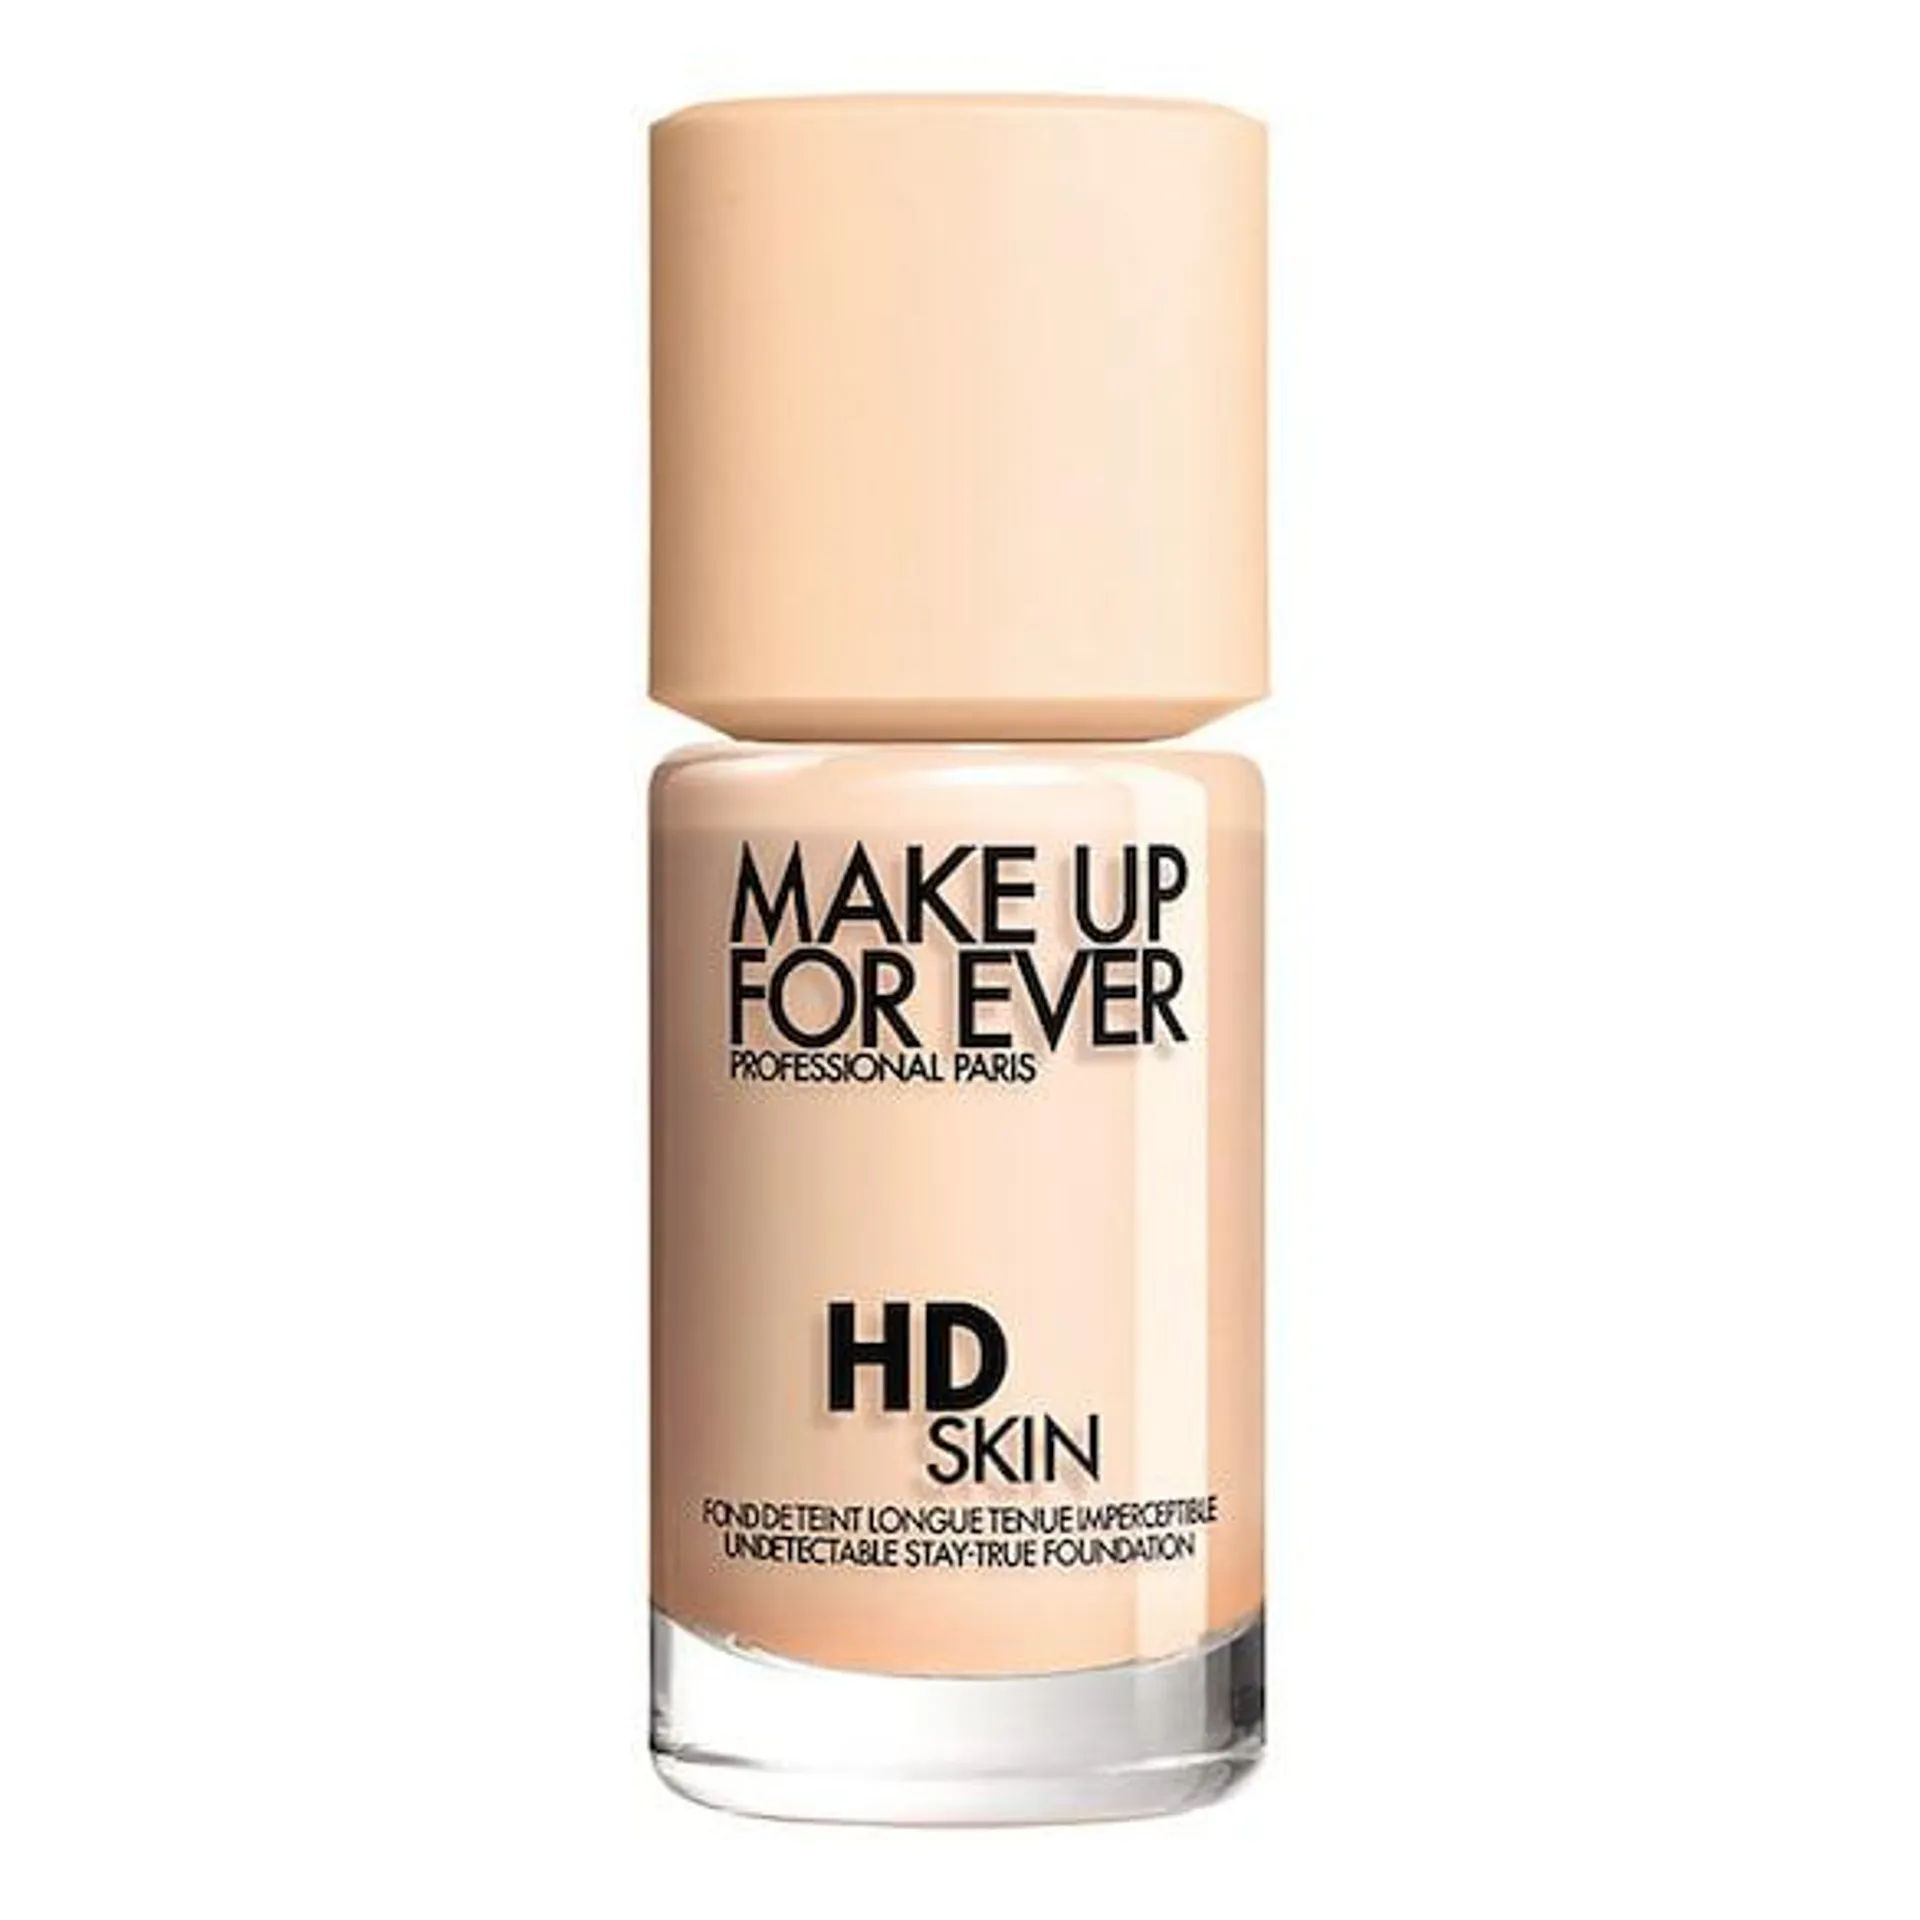 HD Skin Stay-True Foundation